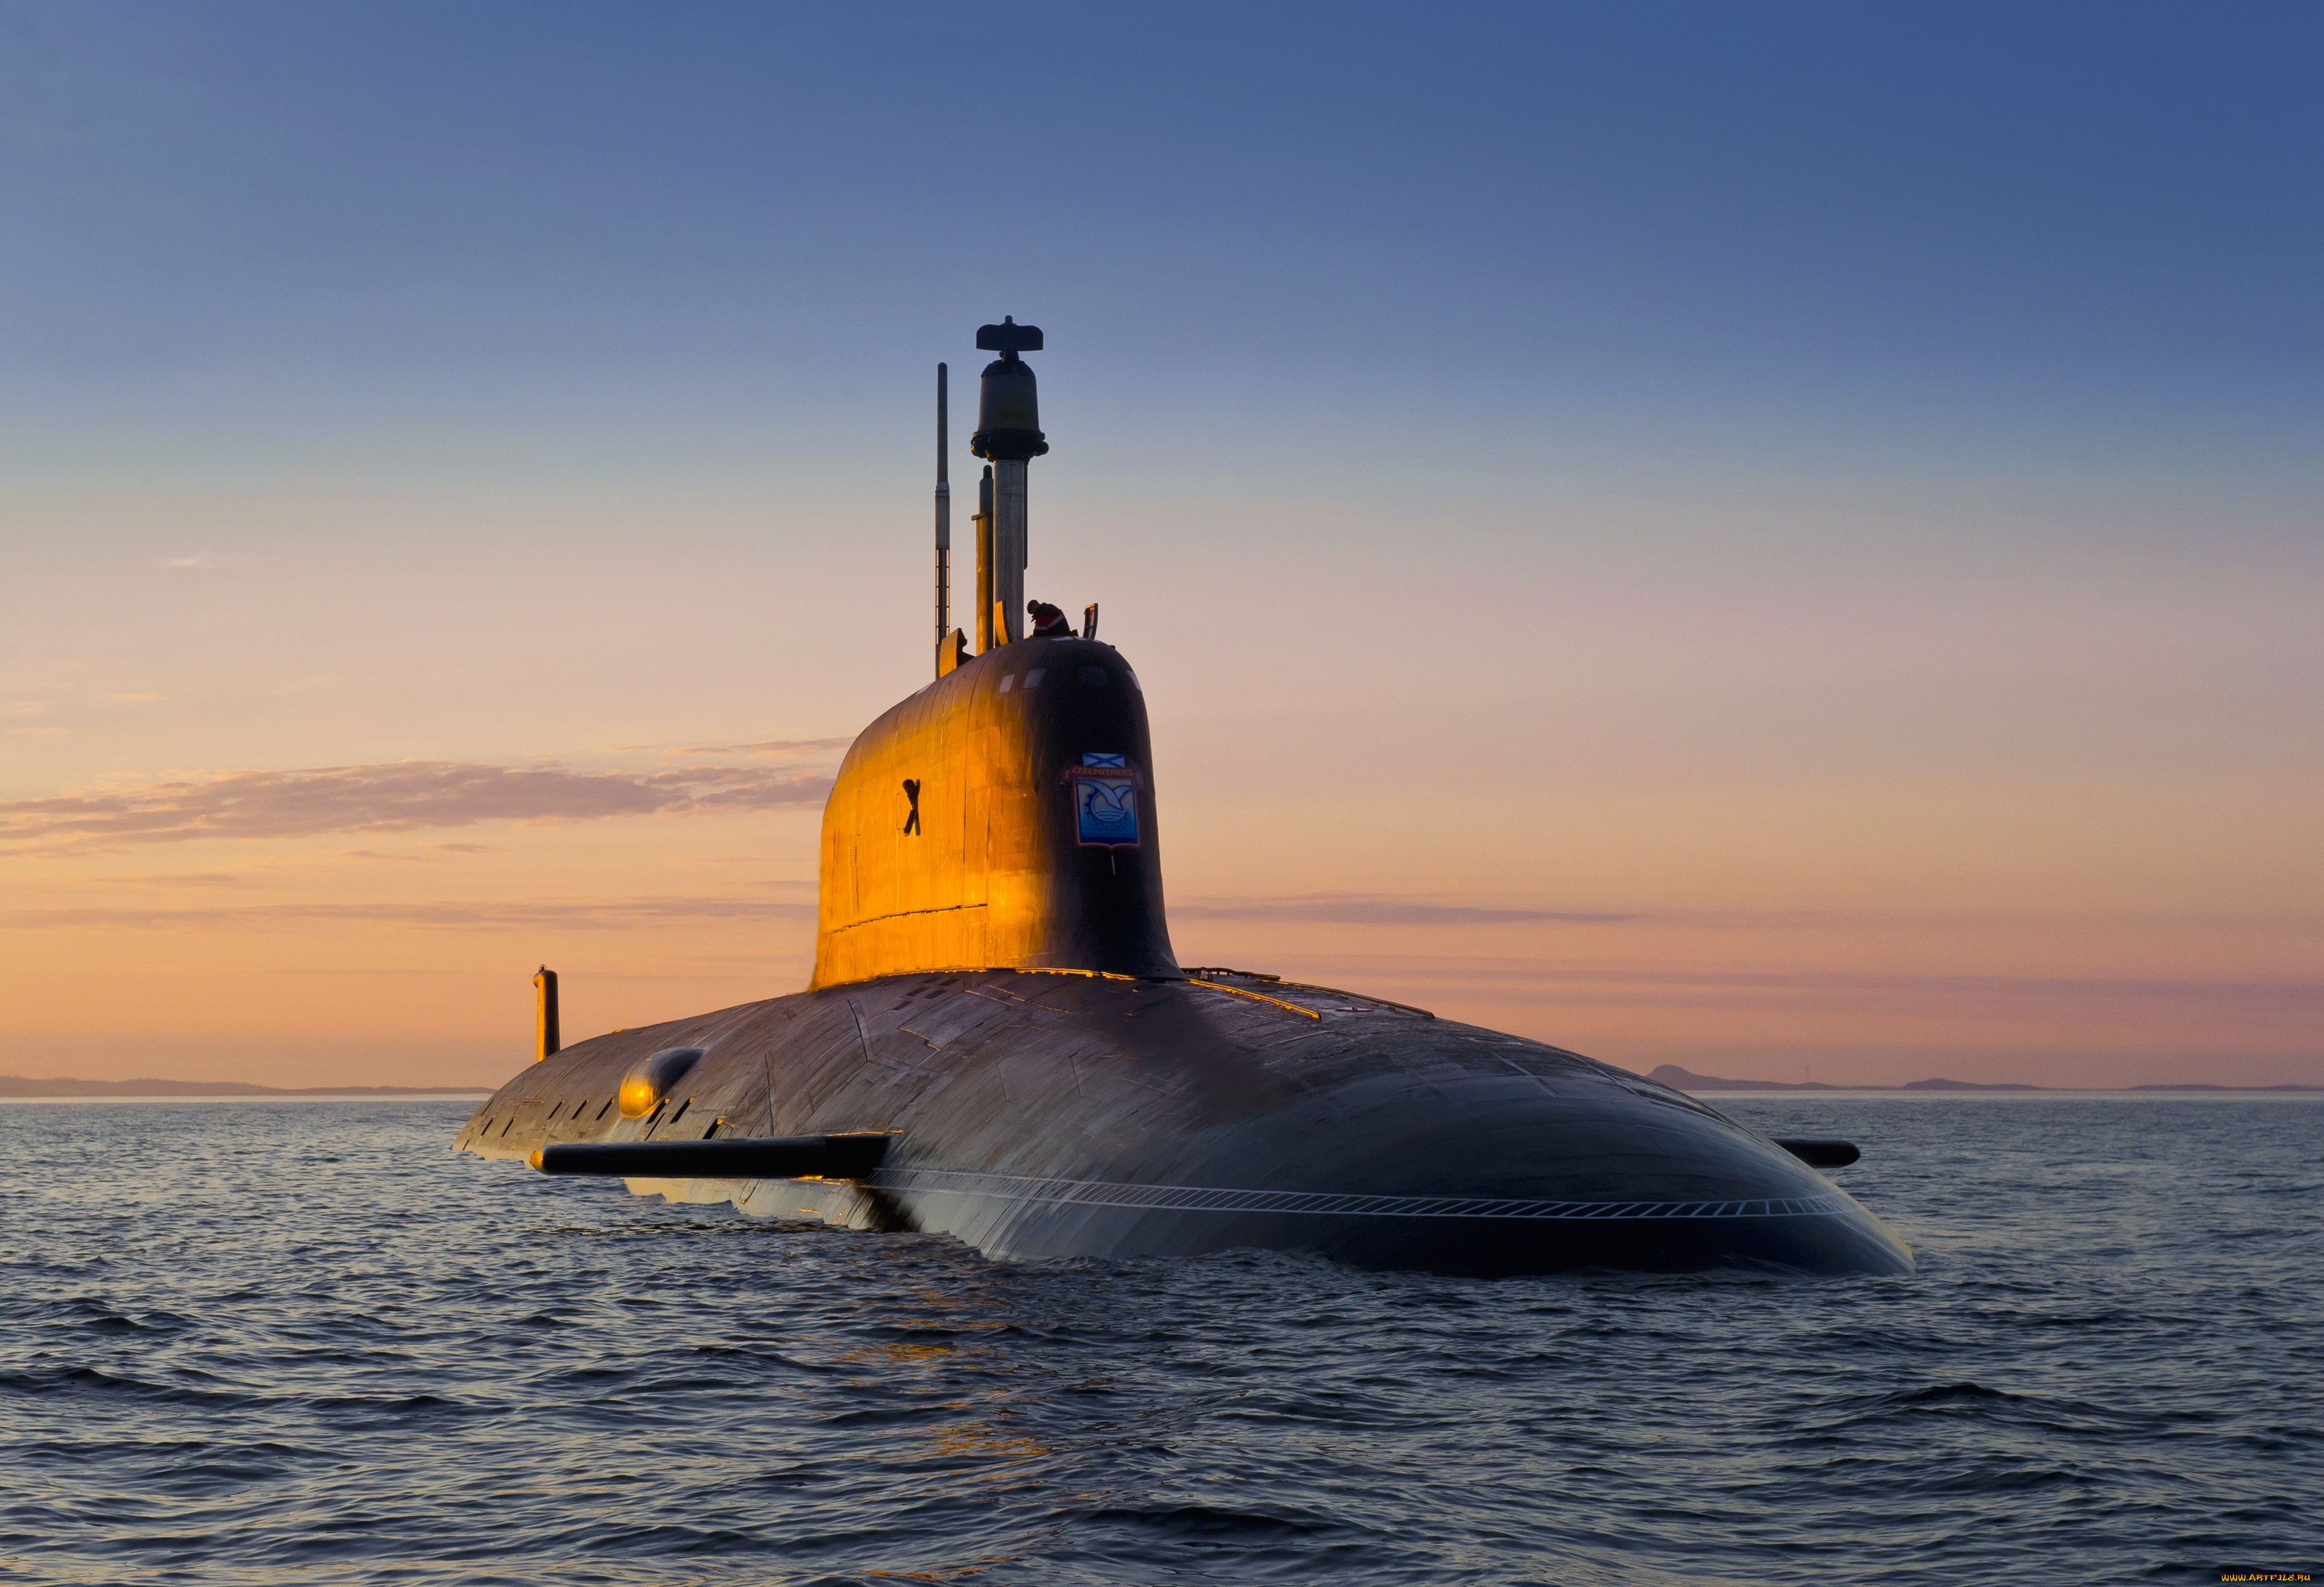 Пл c. Подводная лодка 885м ясень-м. Подводные лодки проекта 885 «ясень». Атомная подводная лодка Северодвинск проекта 885. Подводная лодка ясень Северодвинск.